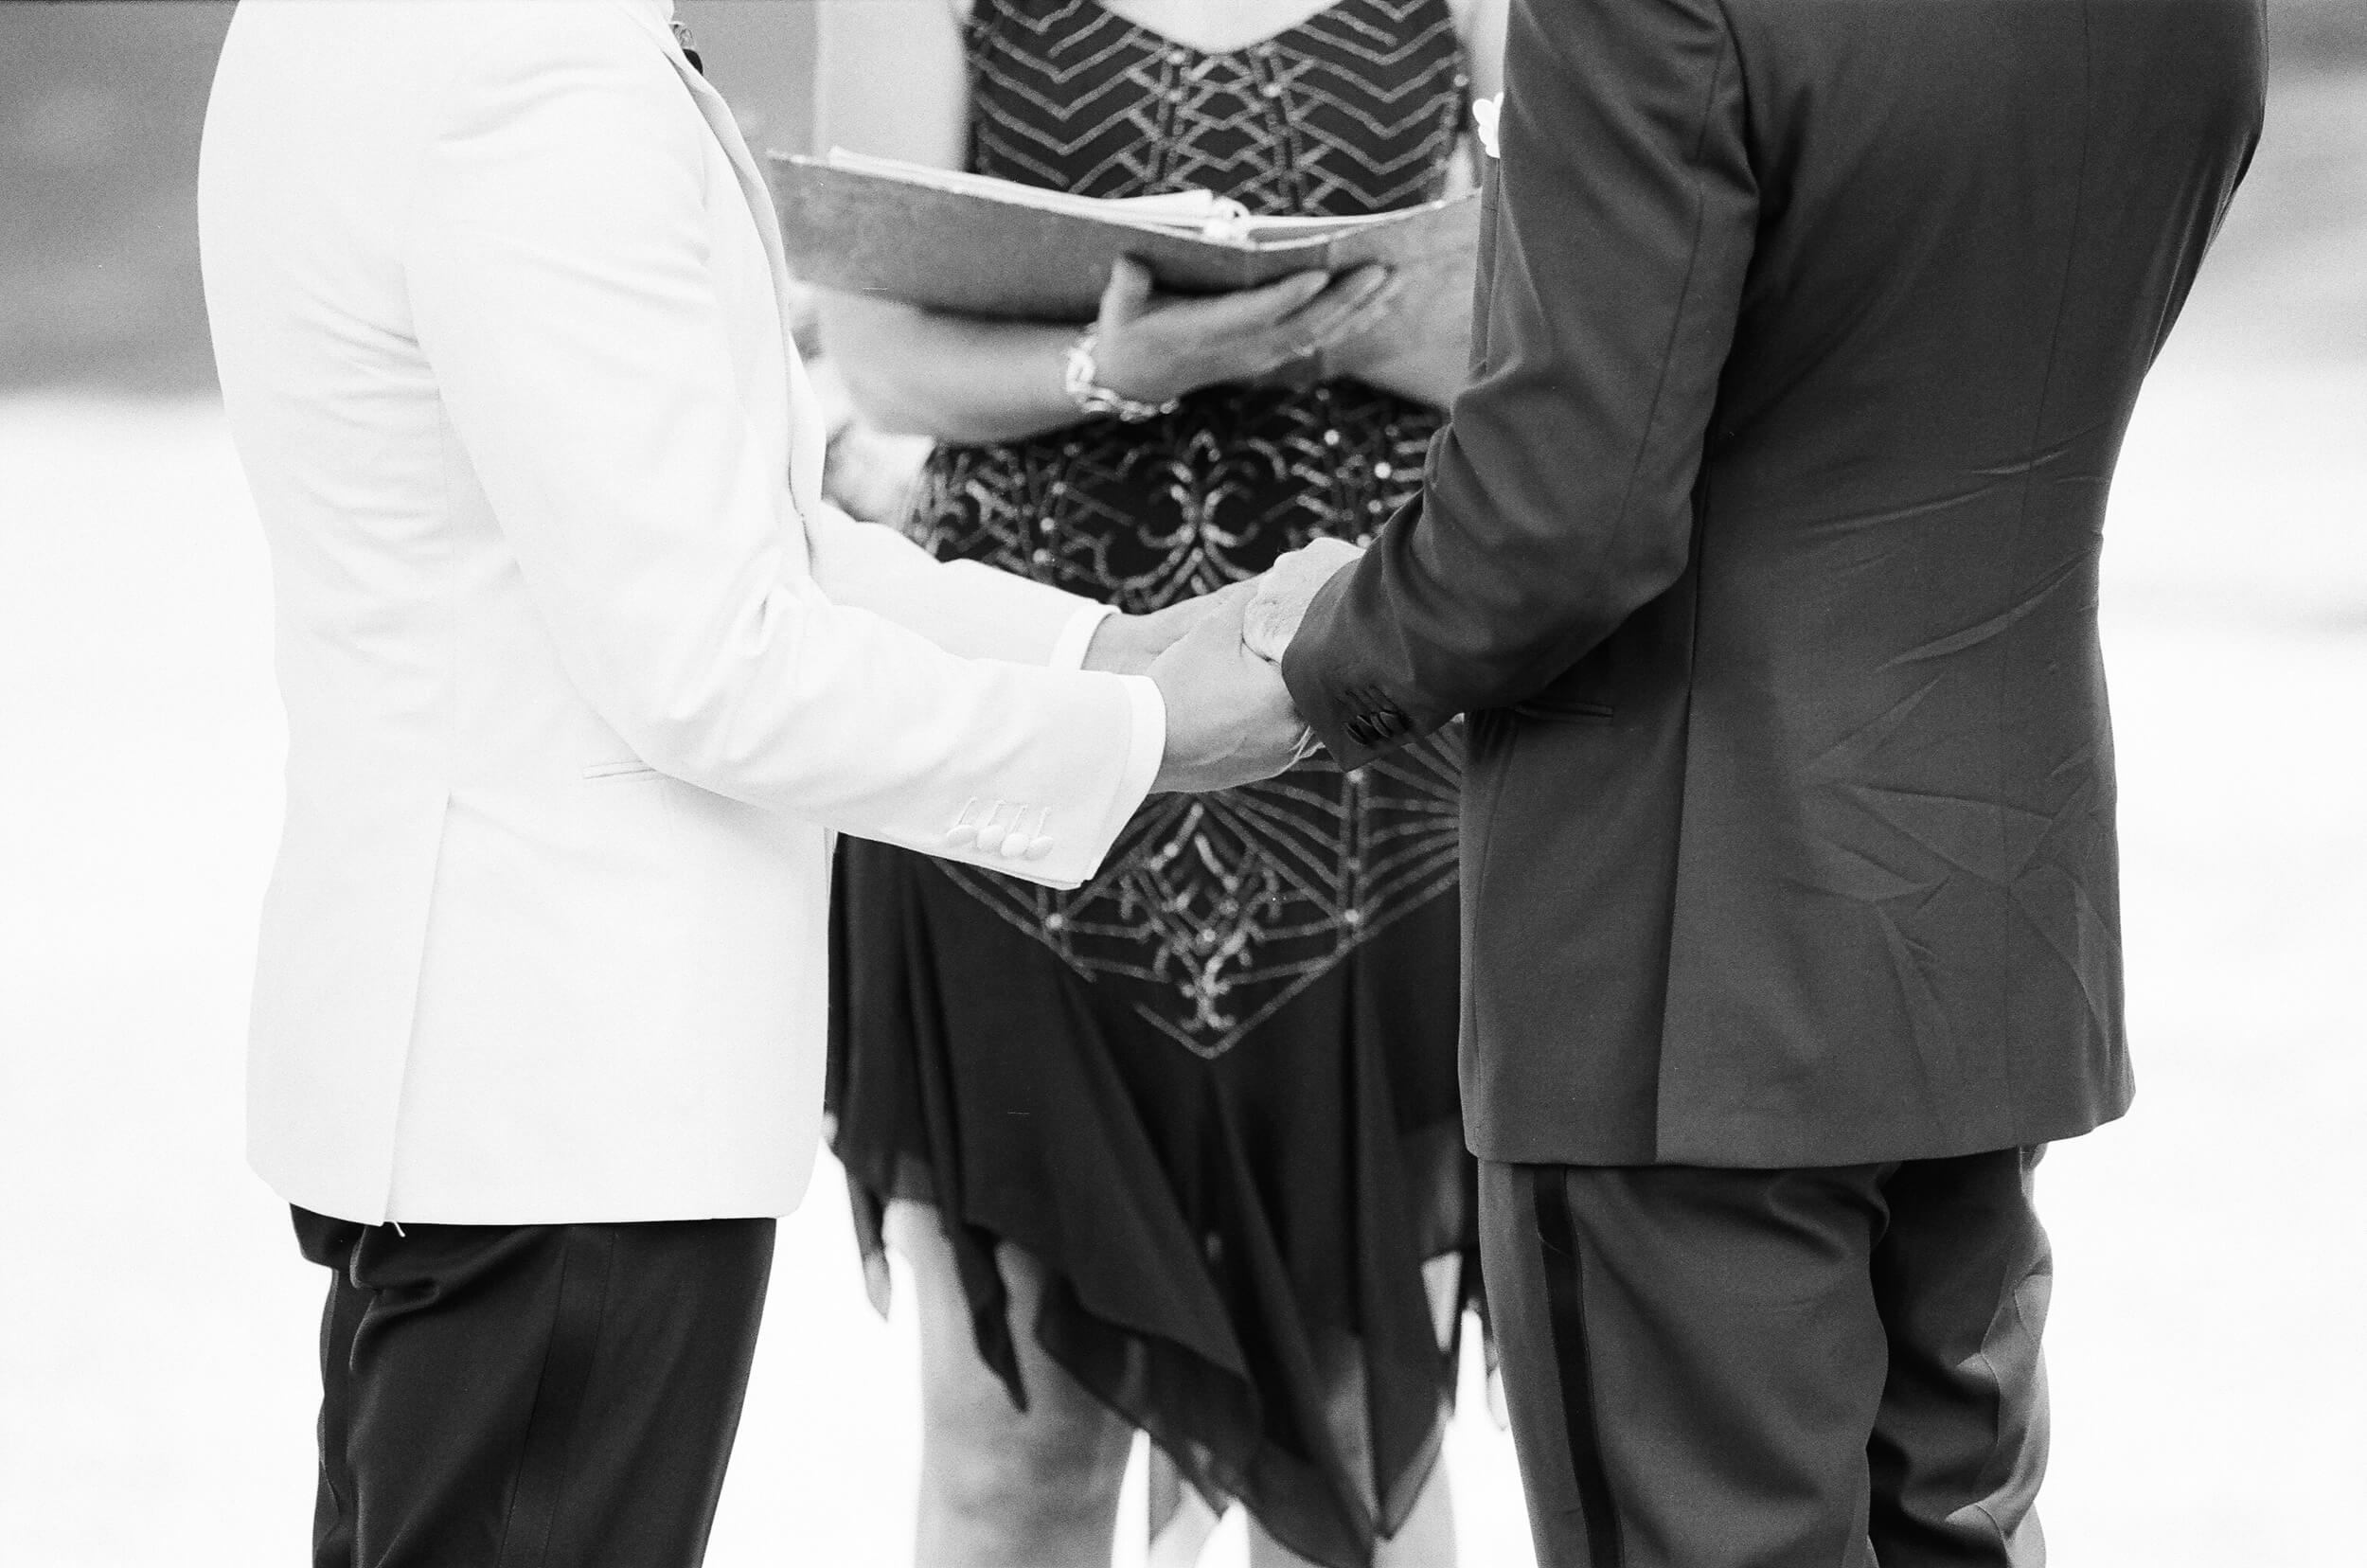 wedding ceremony vows